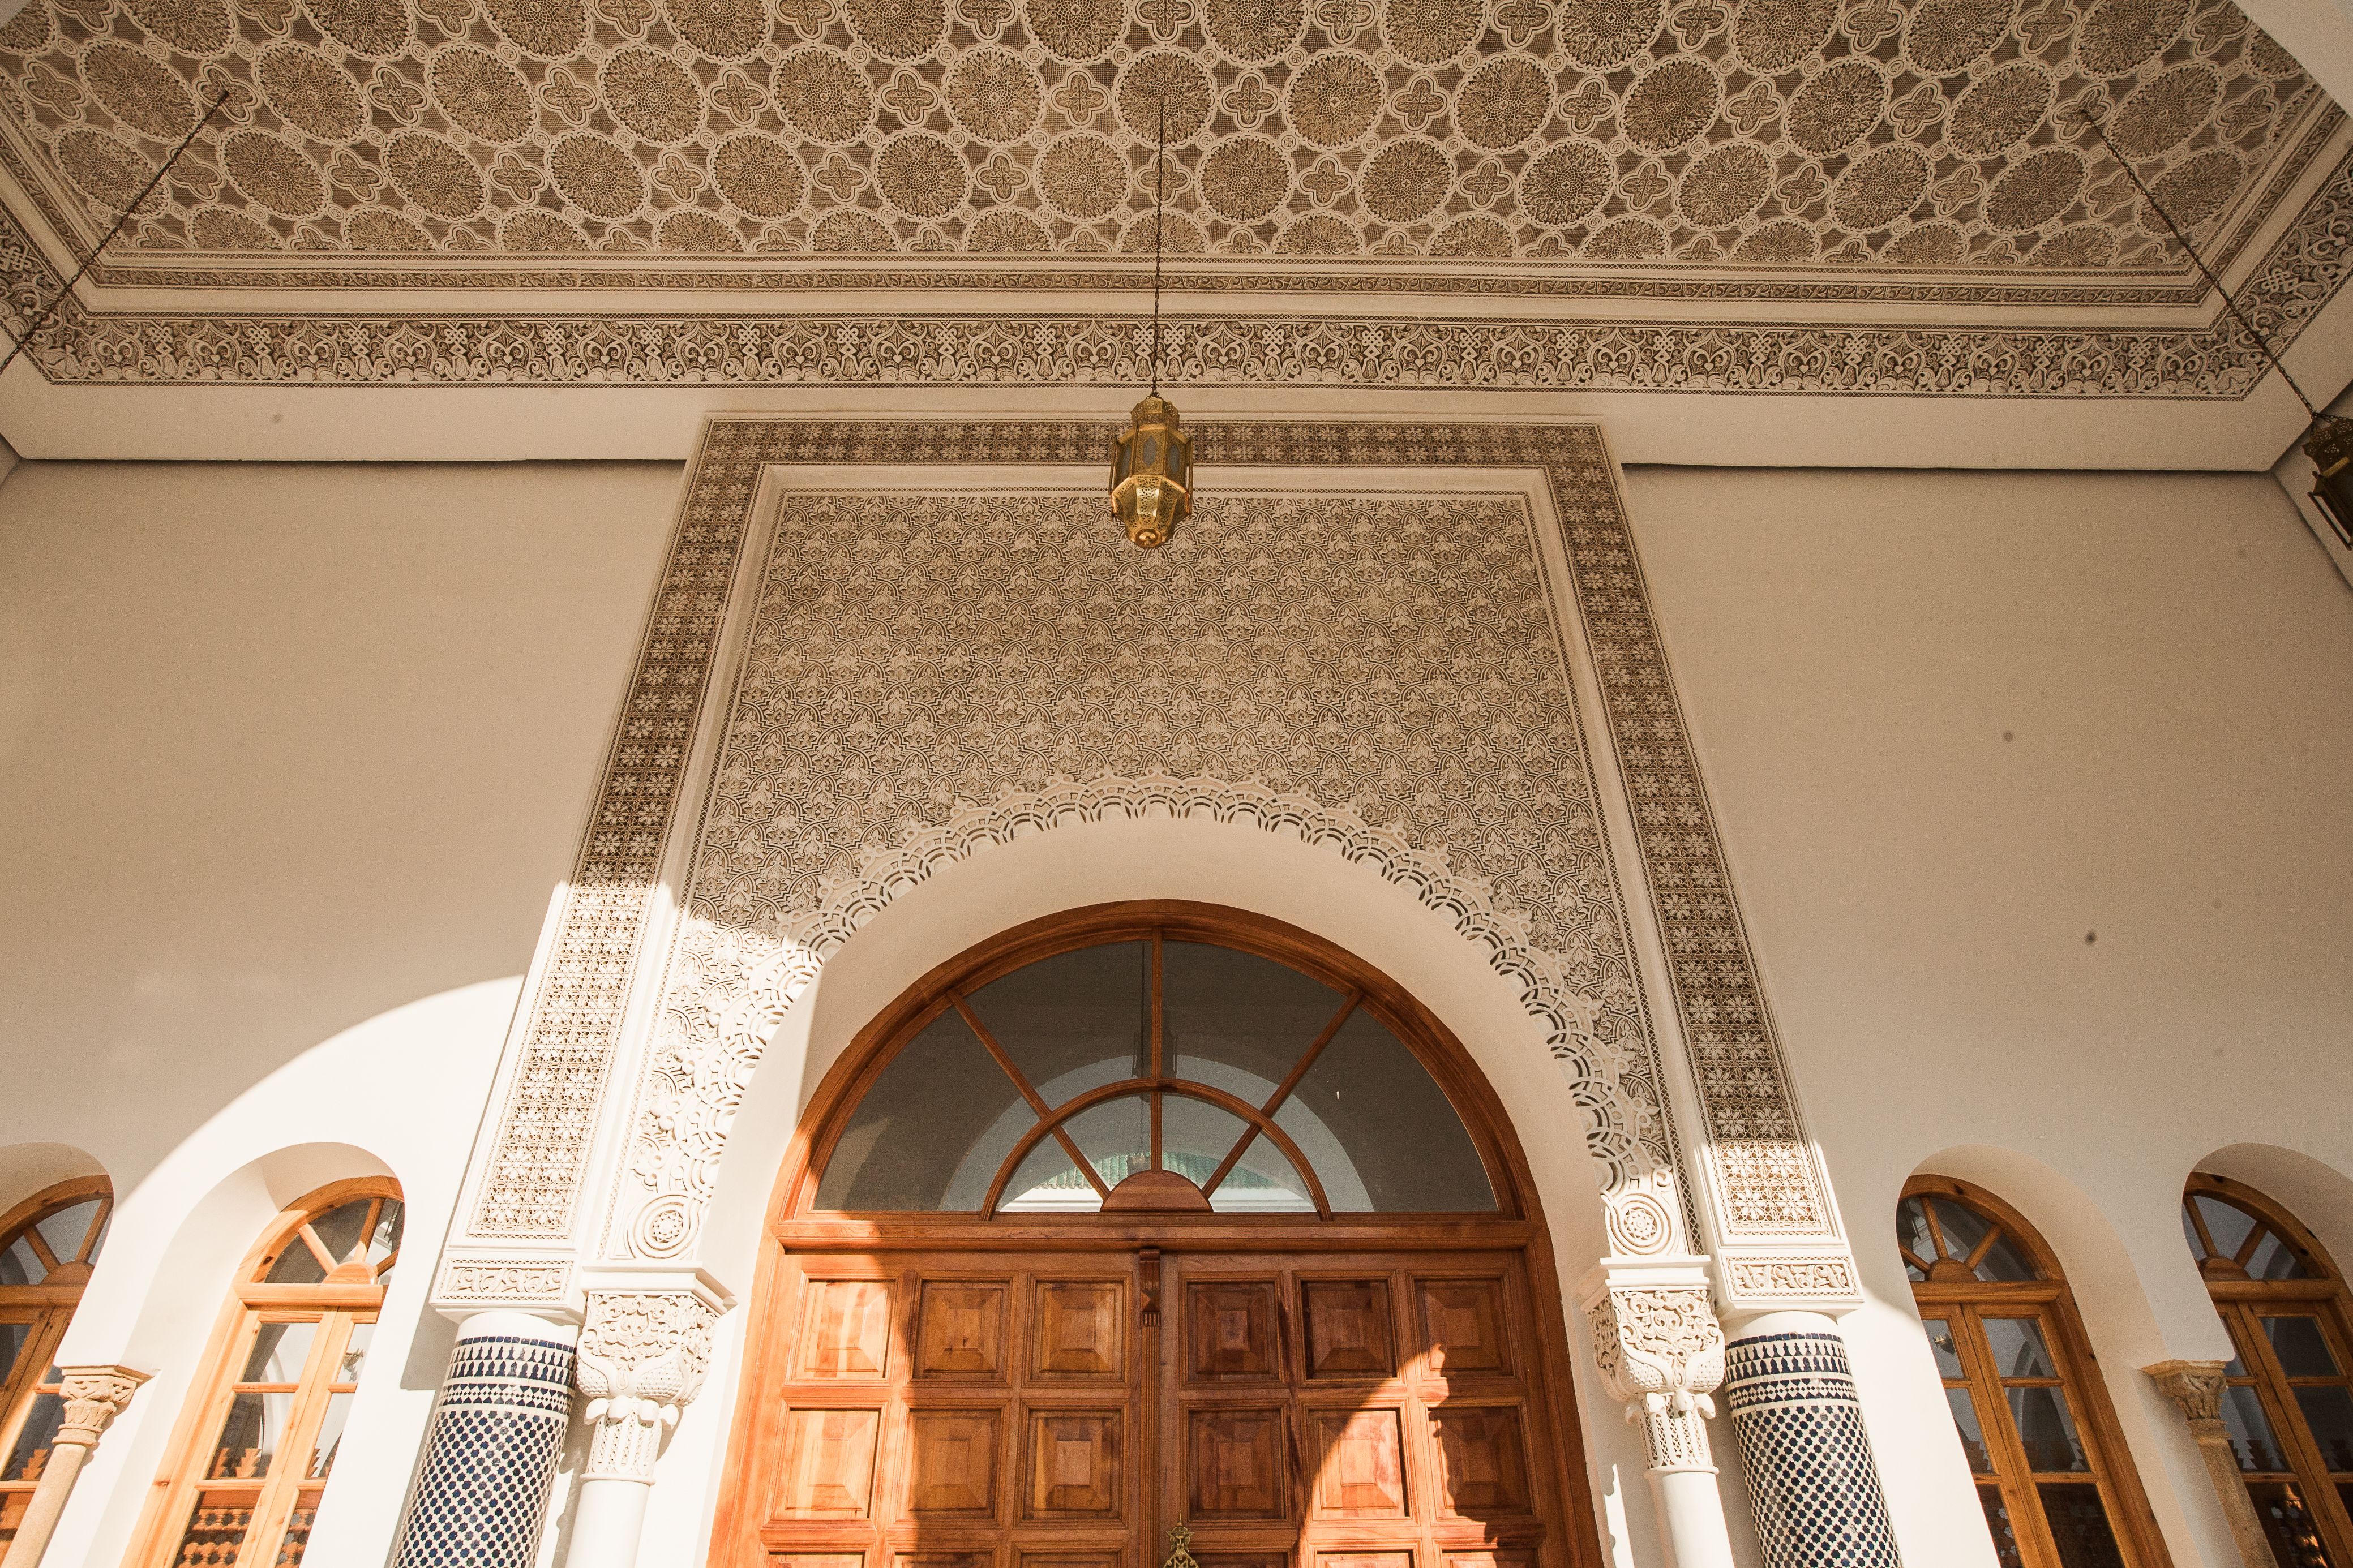 imb-photos-moroccan-mosque-3.jpg